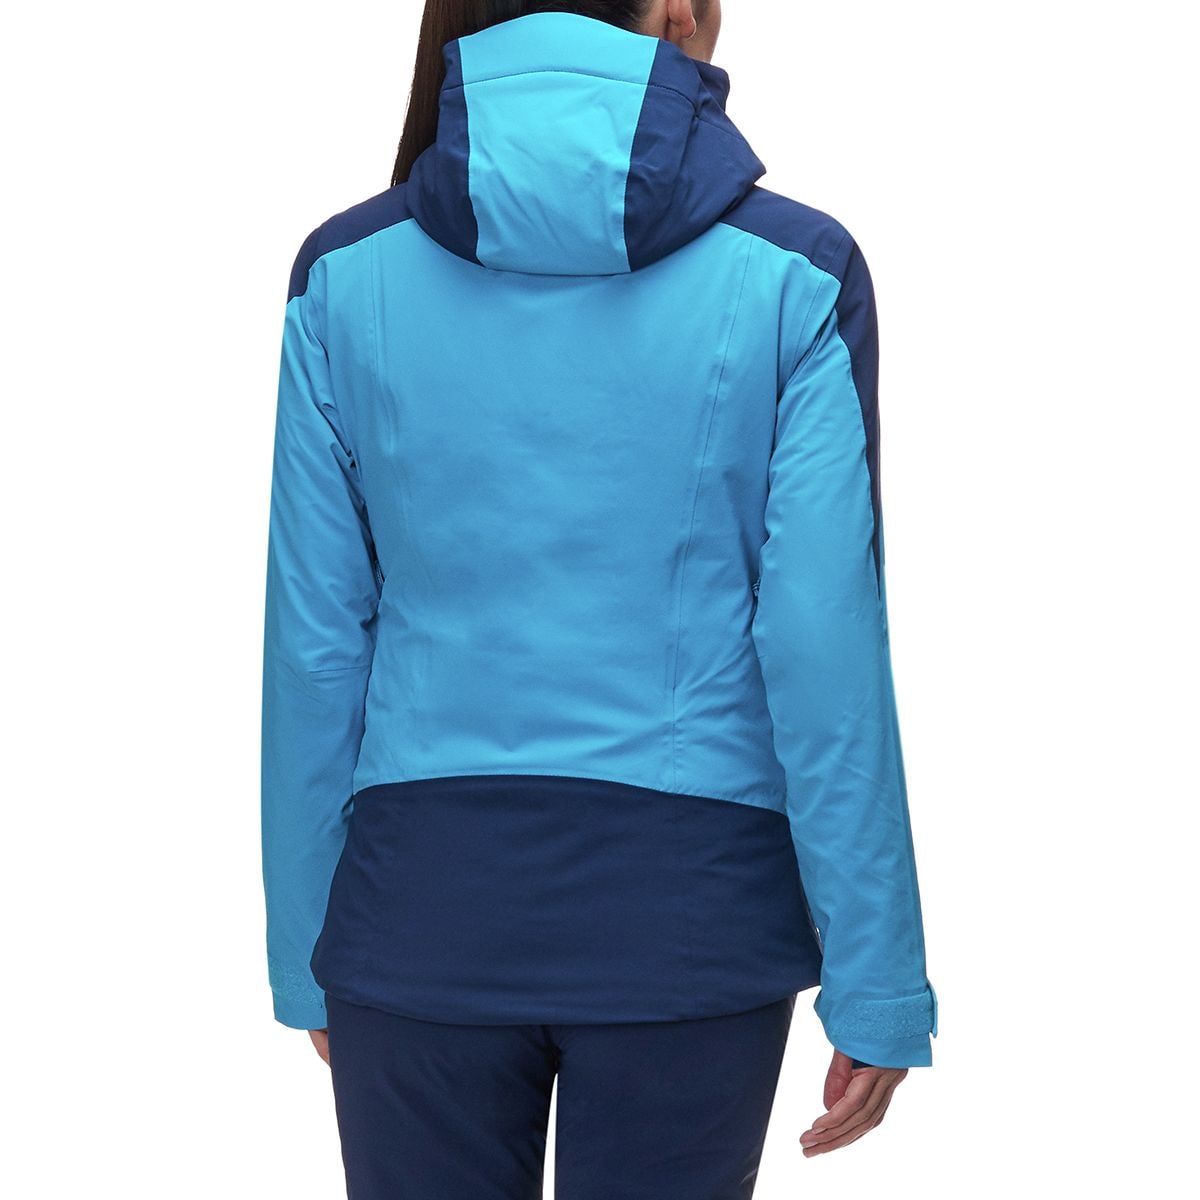 Salomon Icerocket Jacket - Women's Clothing